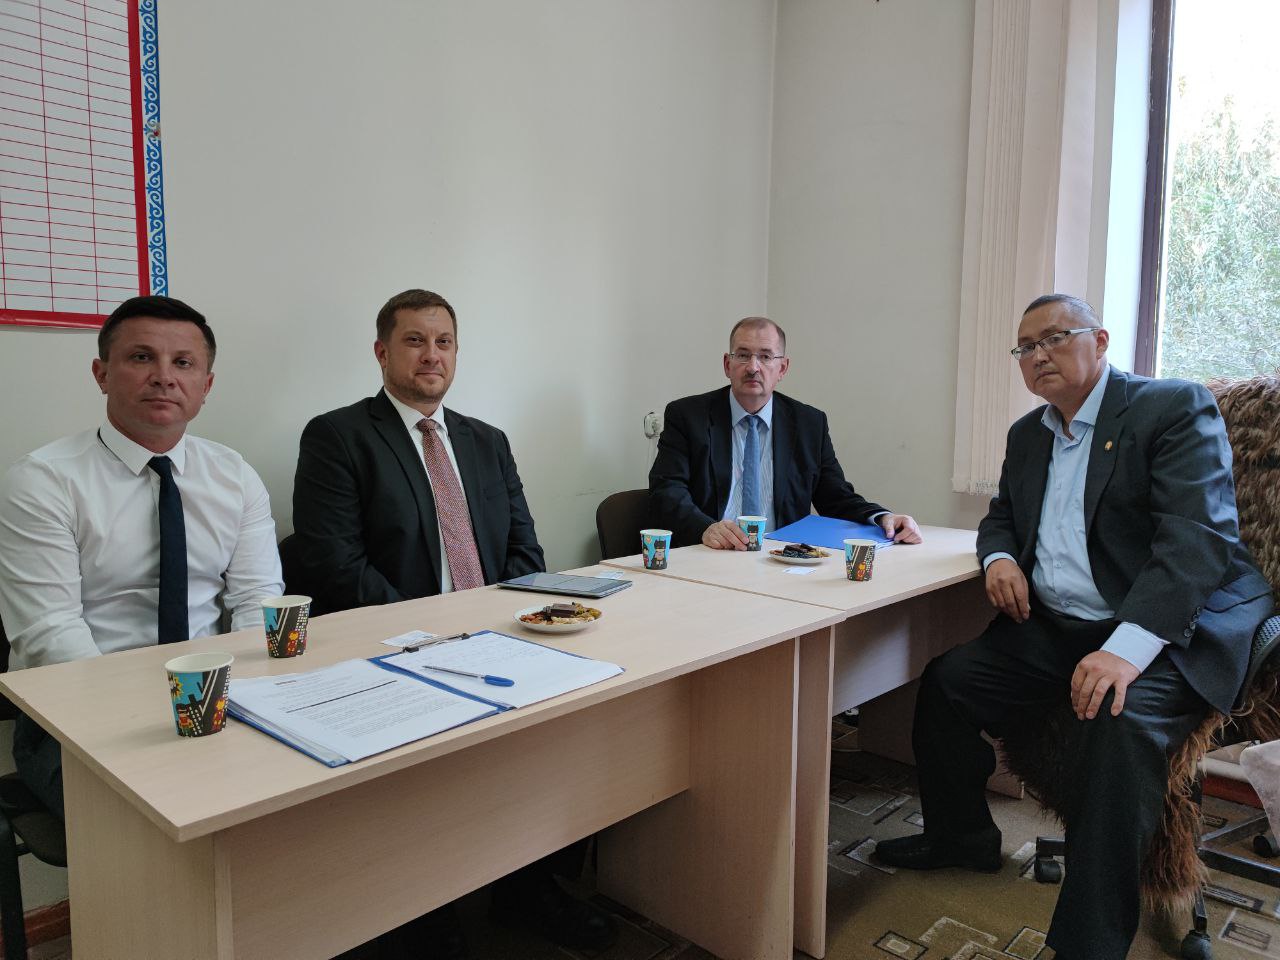 Сотрудники Таласского представительства НЦПП КР провели рабочую встречу послом и главой Программного офиса ОБСЕ в Бишкеке